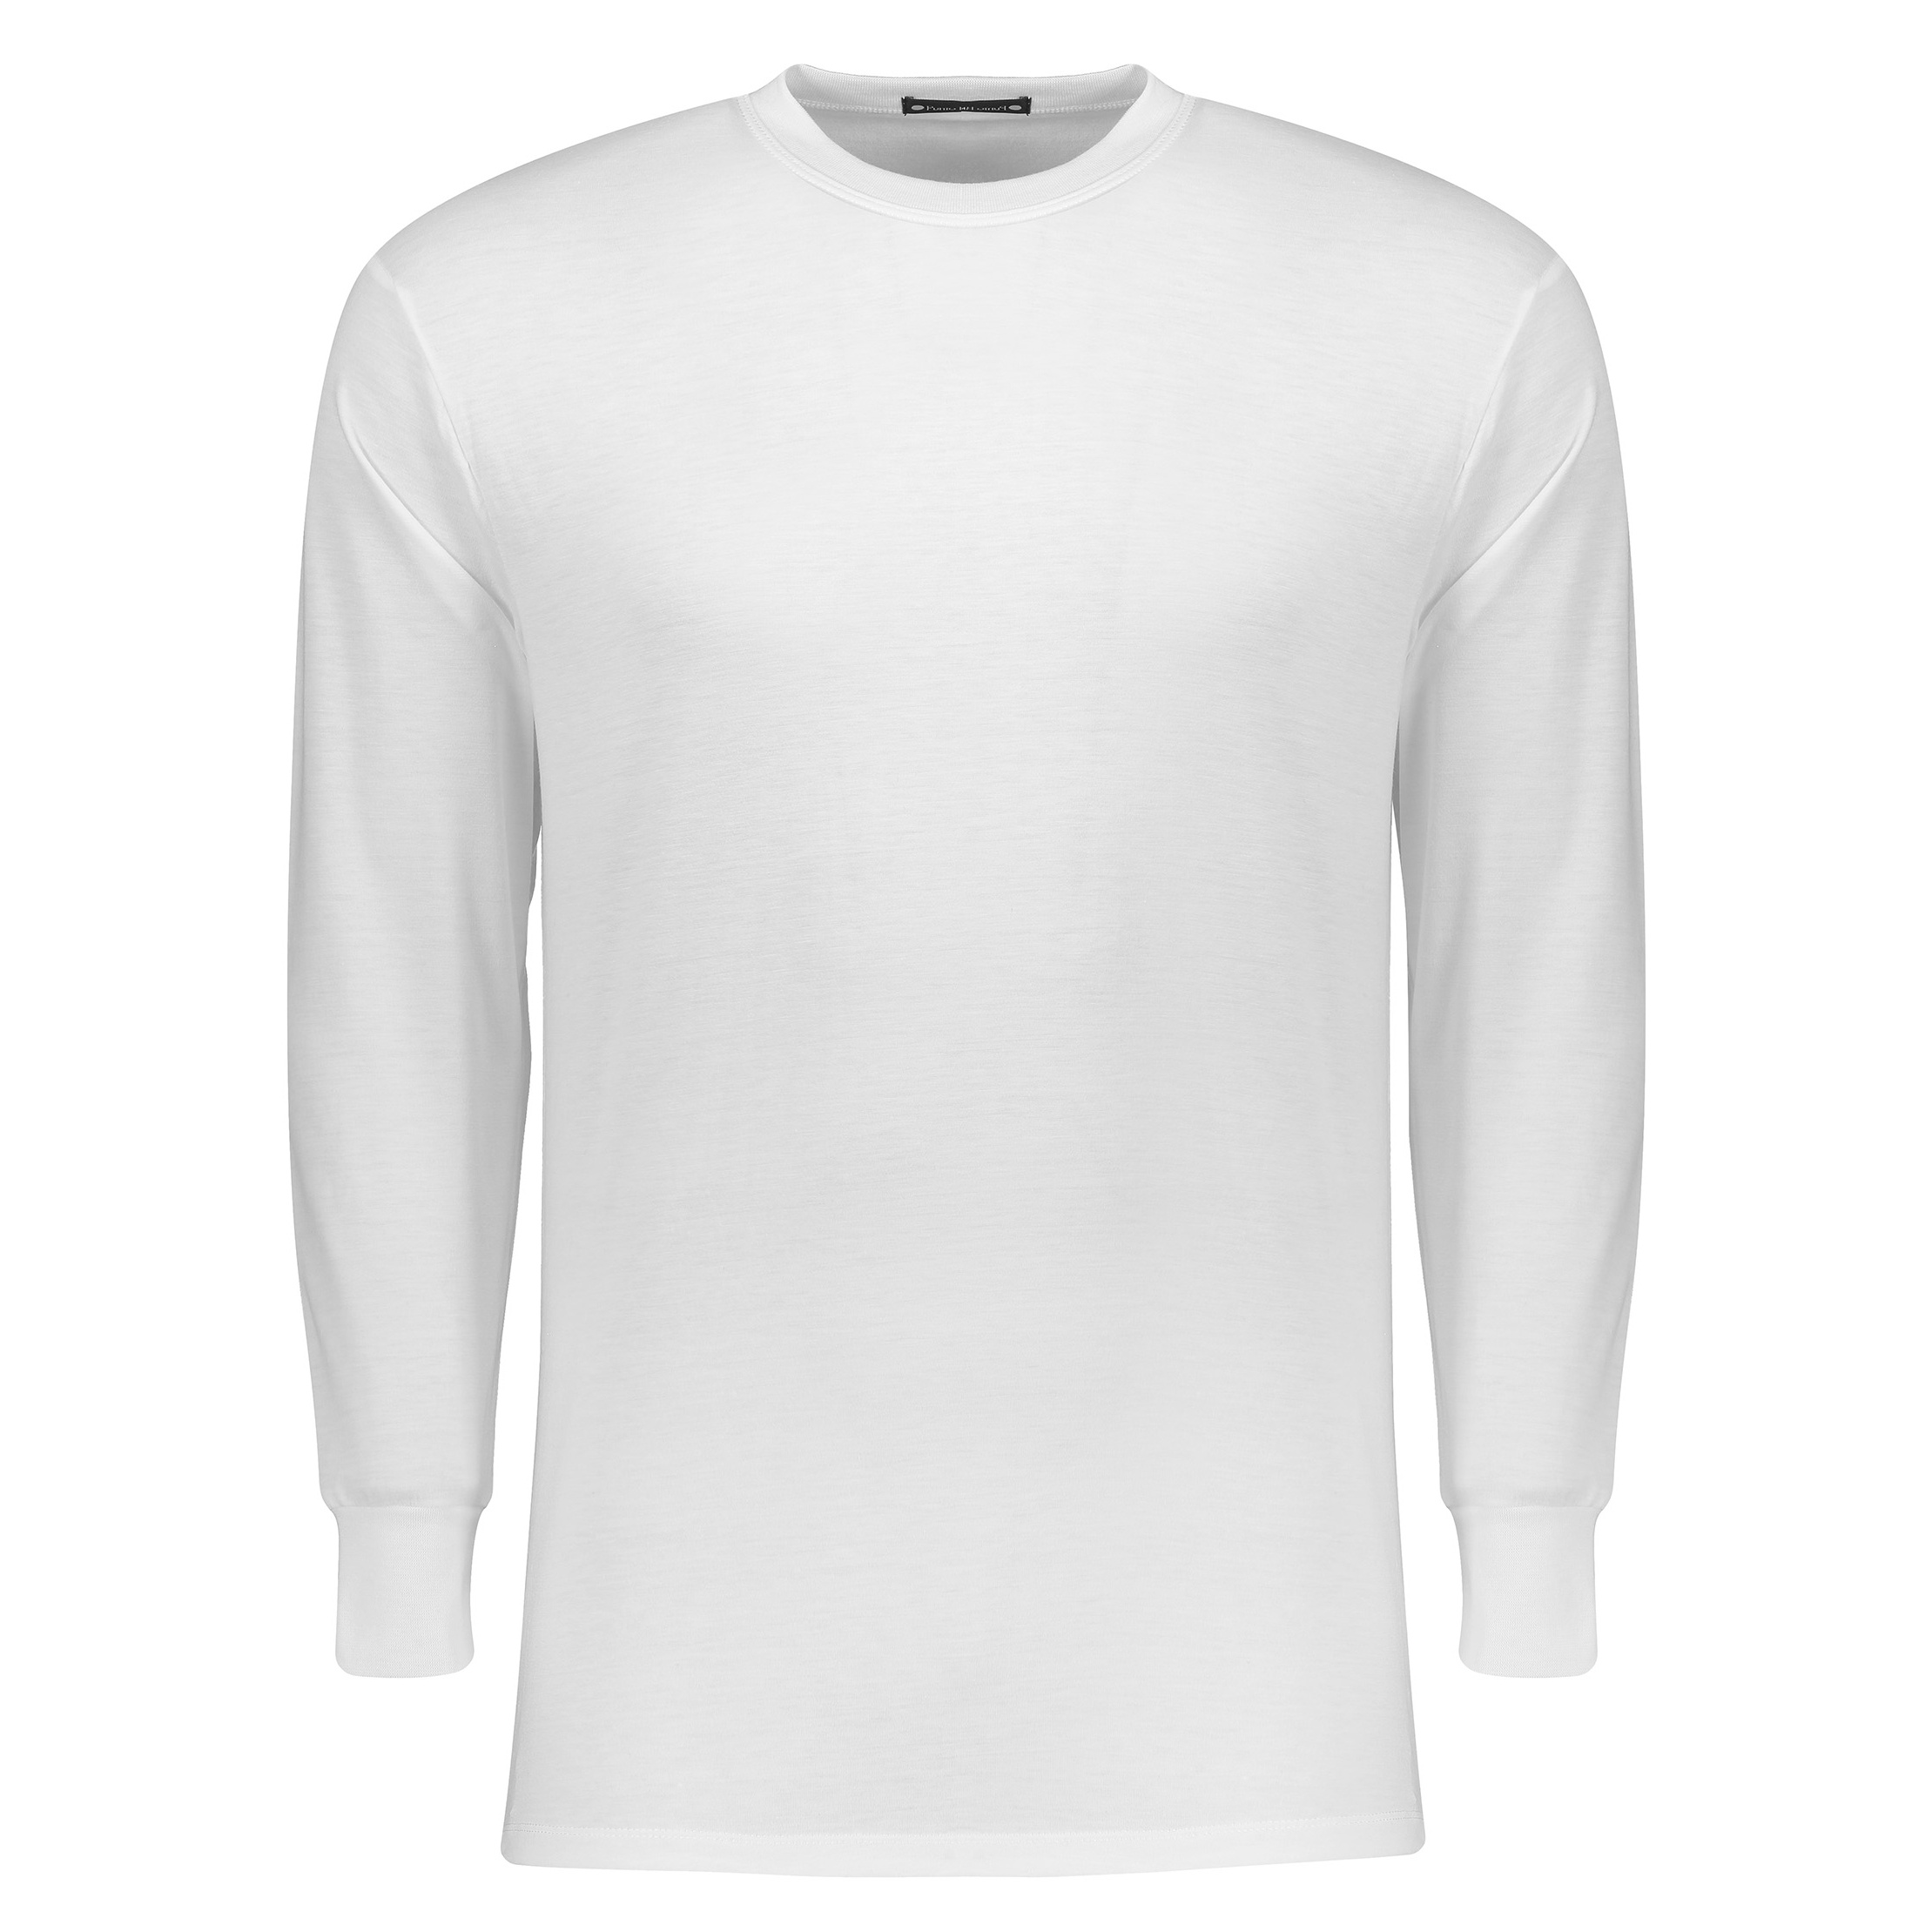 نکته خرید - قیمت روز تی شرت راحتی مردانه پونتو بلانکو کد 33179-20-000 خرید